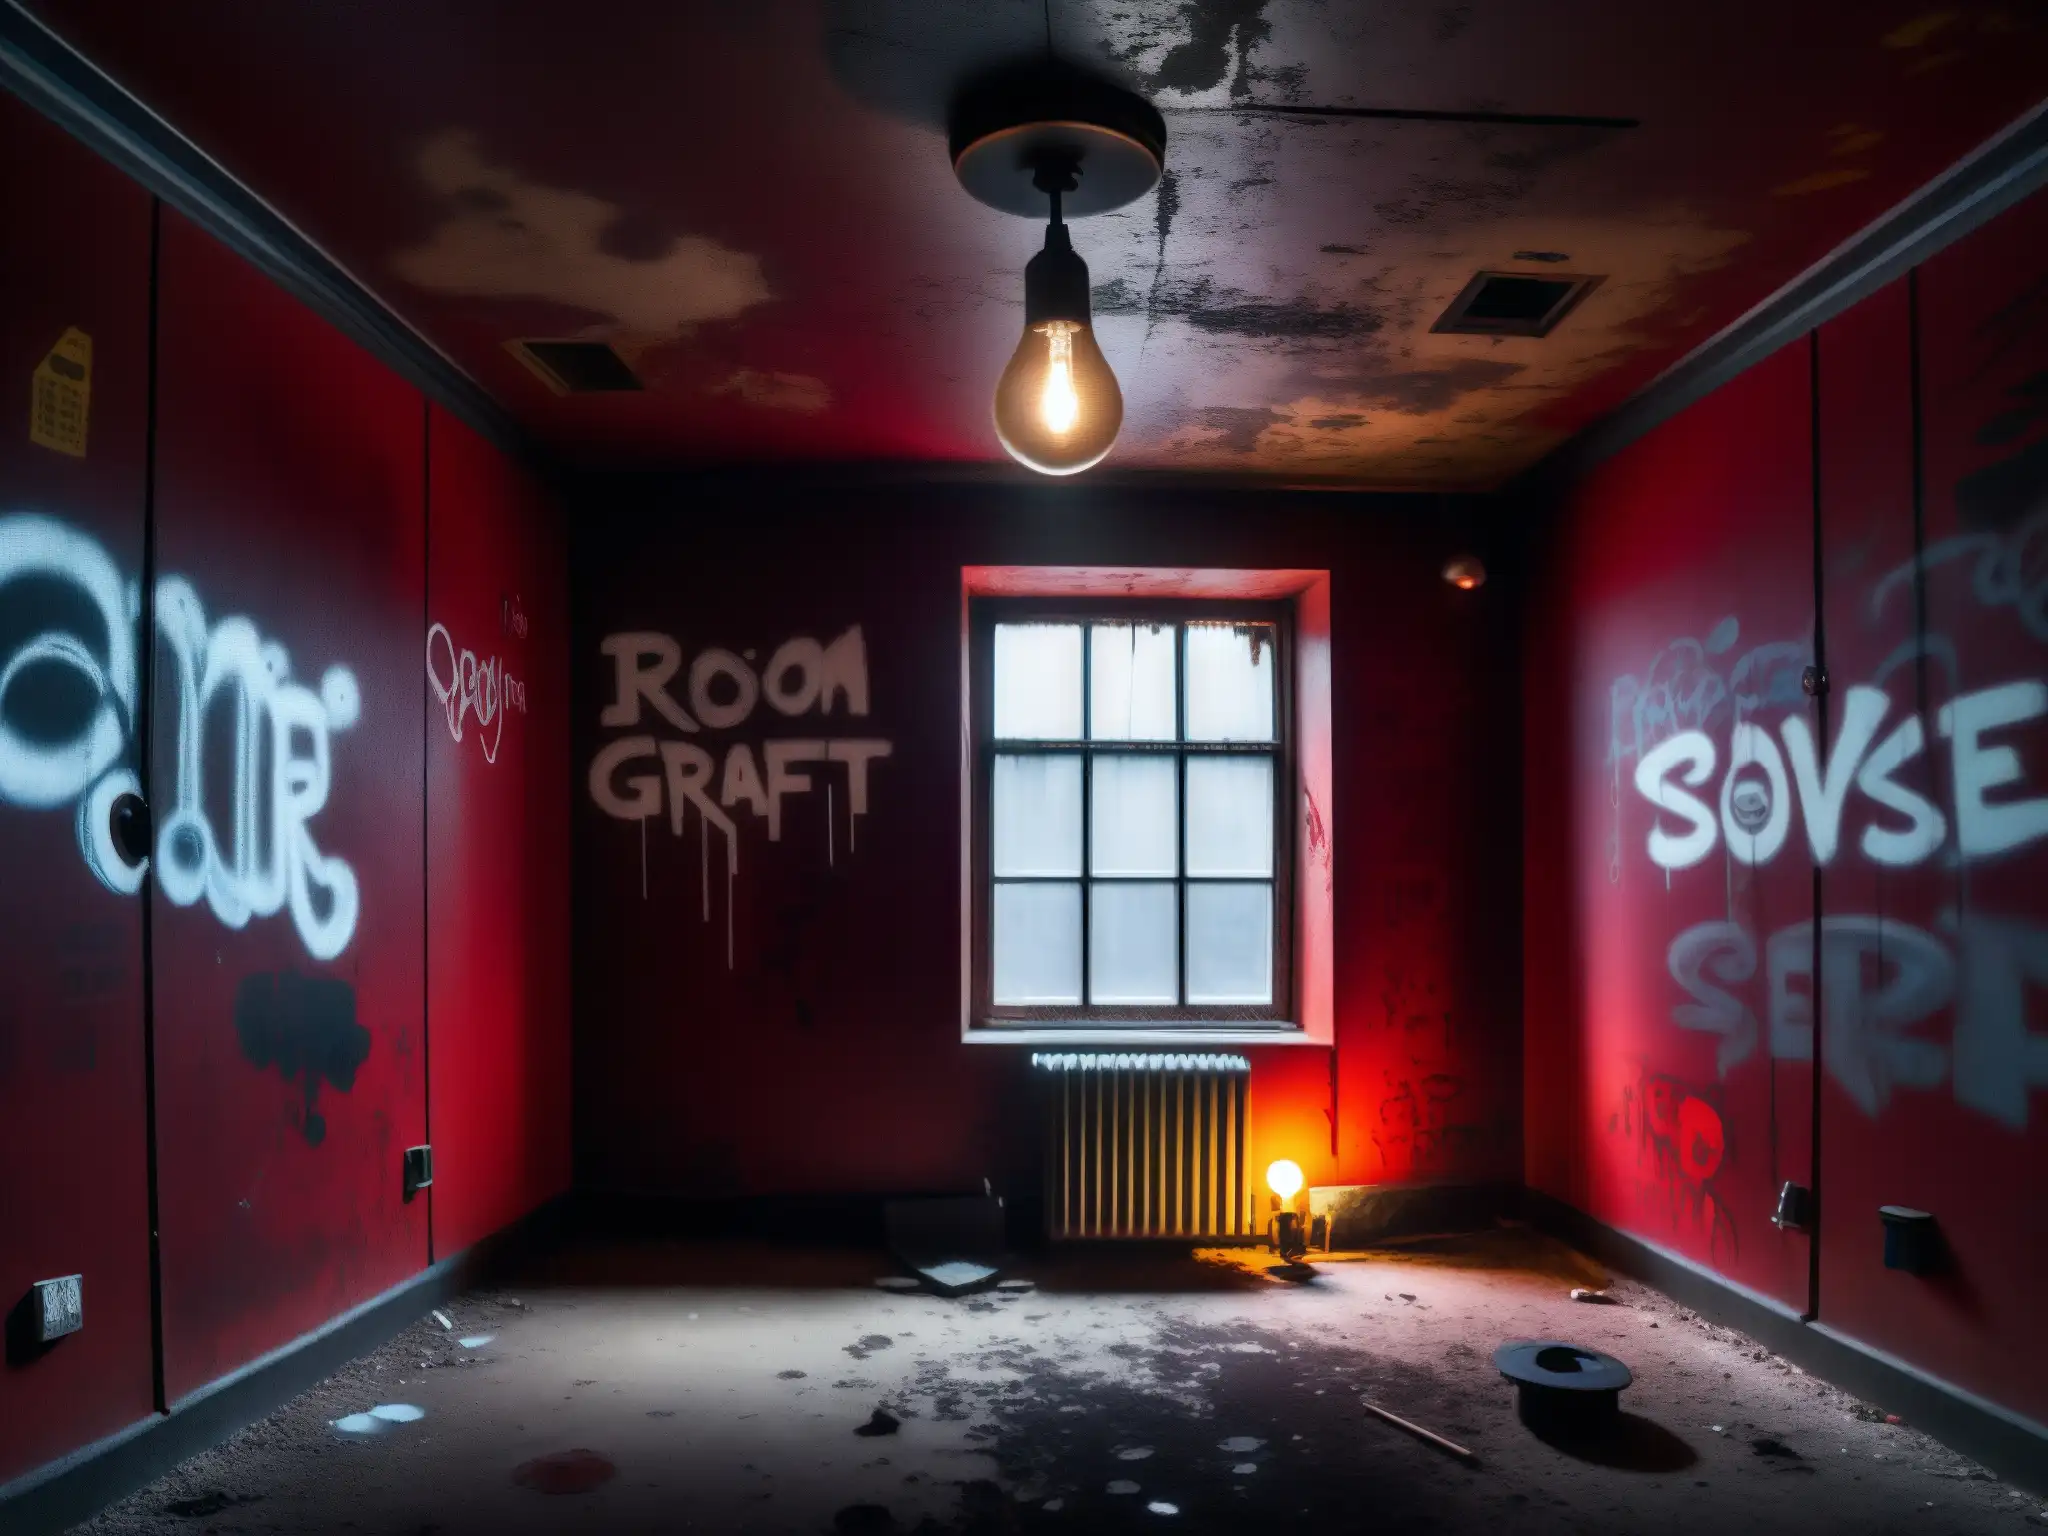 Un inquietante y misterioso cuarto con paredes rojo sangre, grafitis inquietantes y una única bombilla desnuda